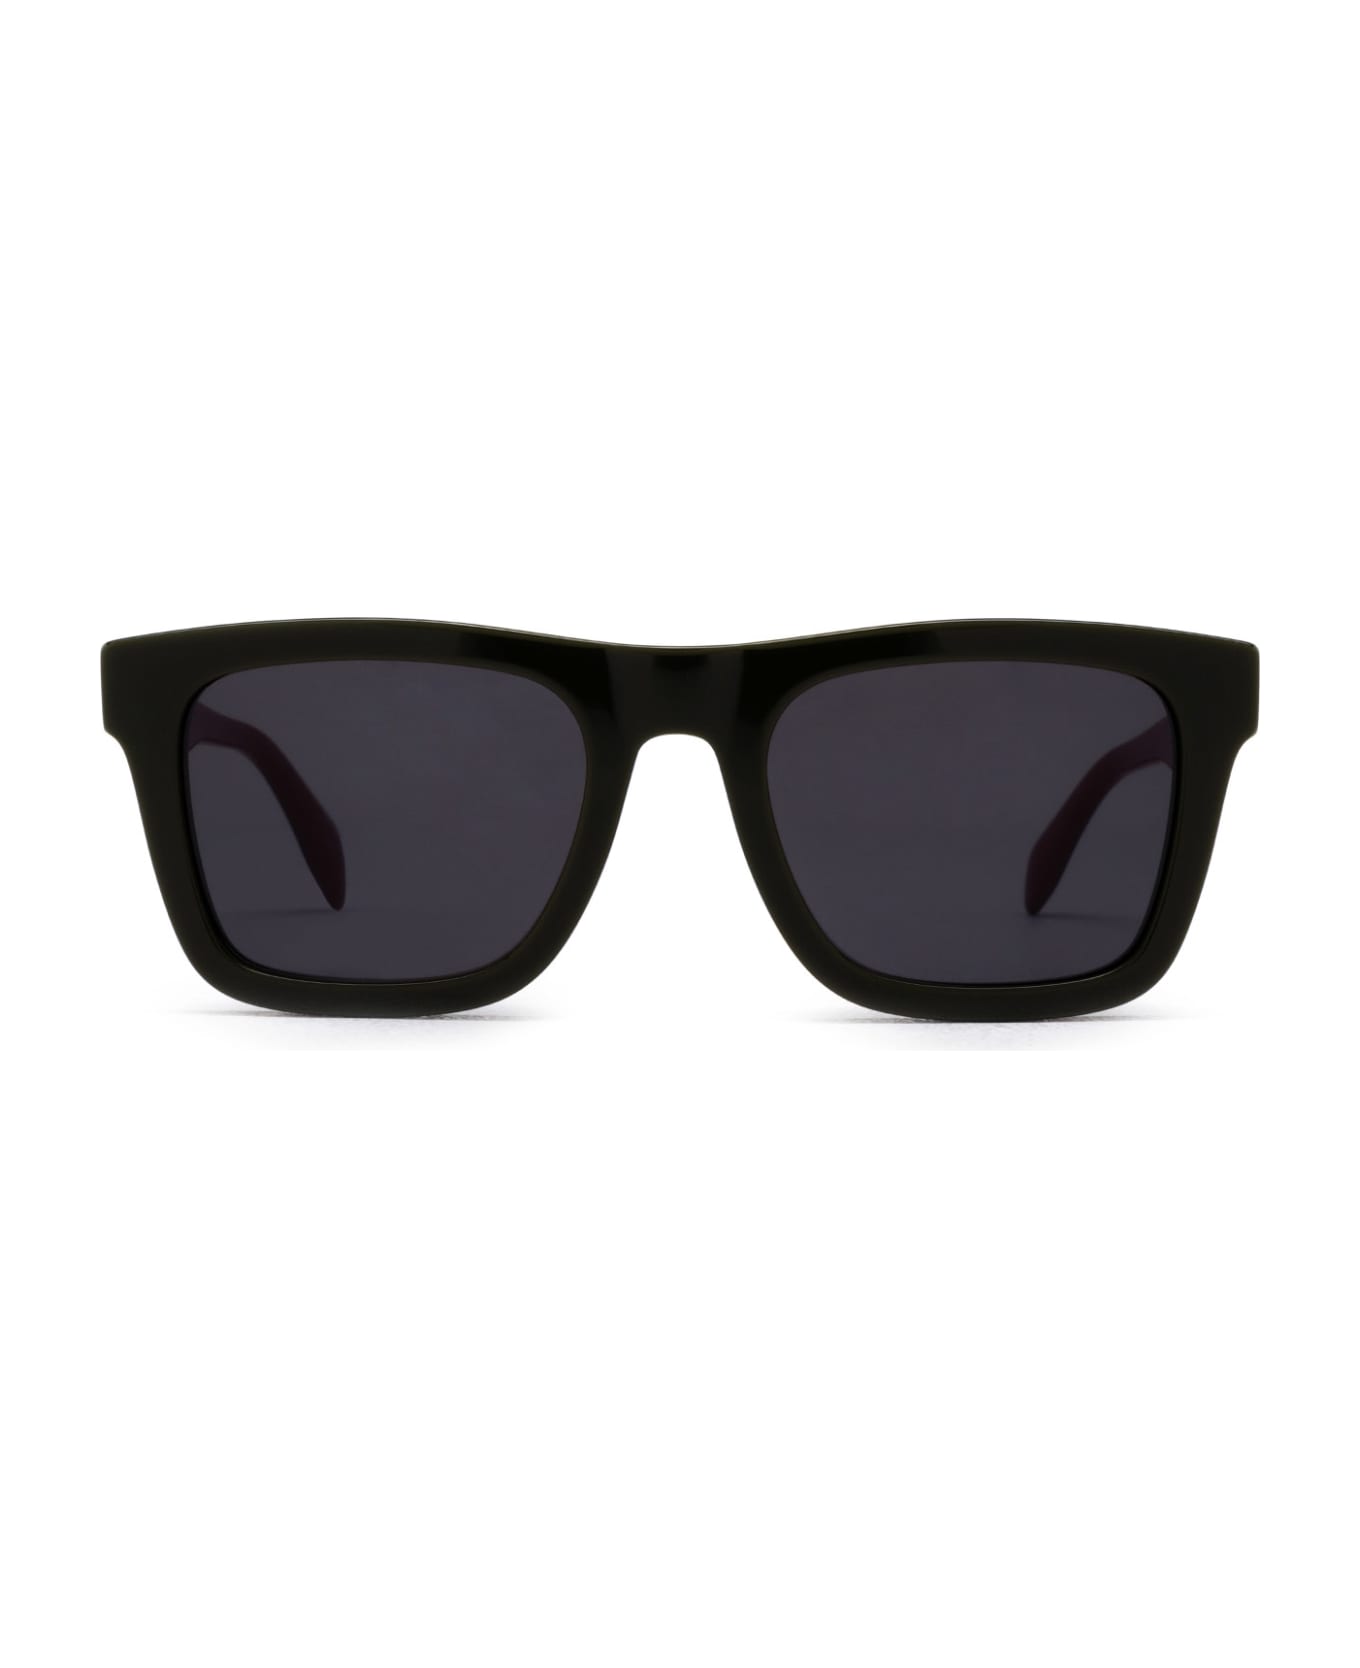 Alexander McQueen Eyewear Am0301s Green Sunglasses - Green